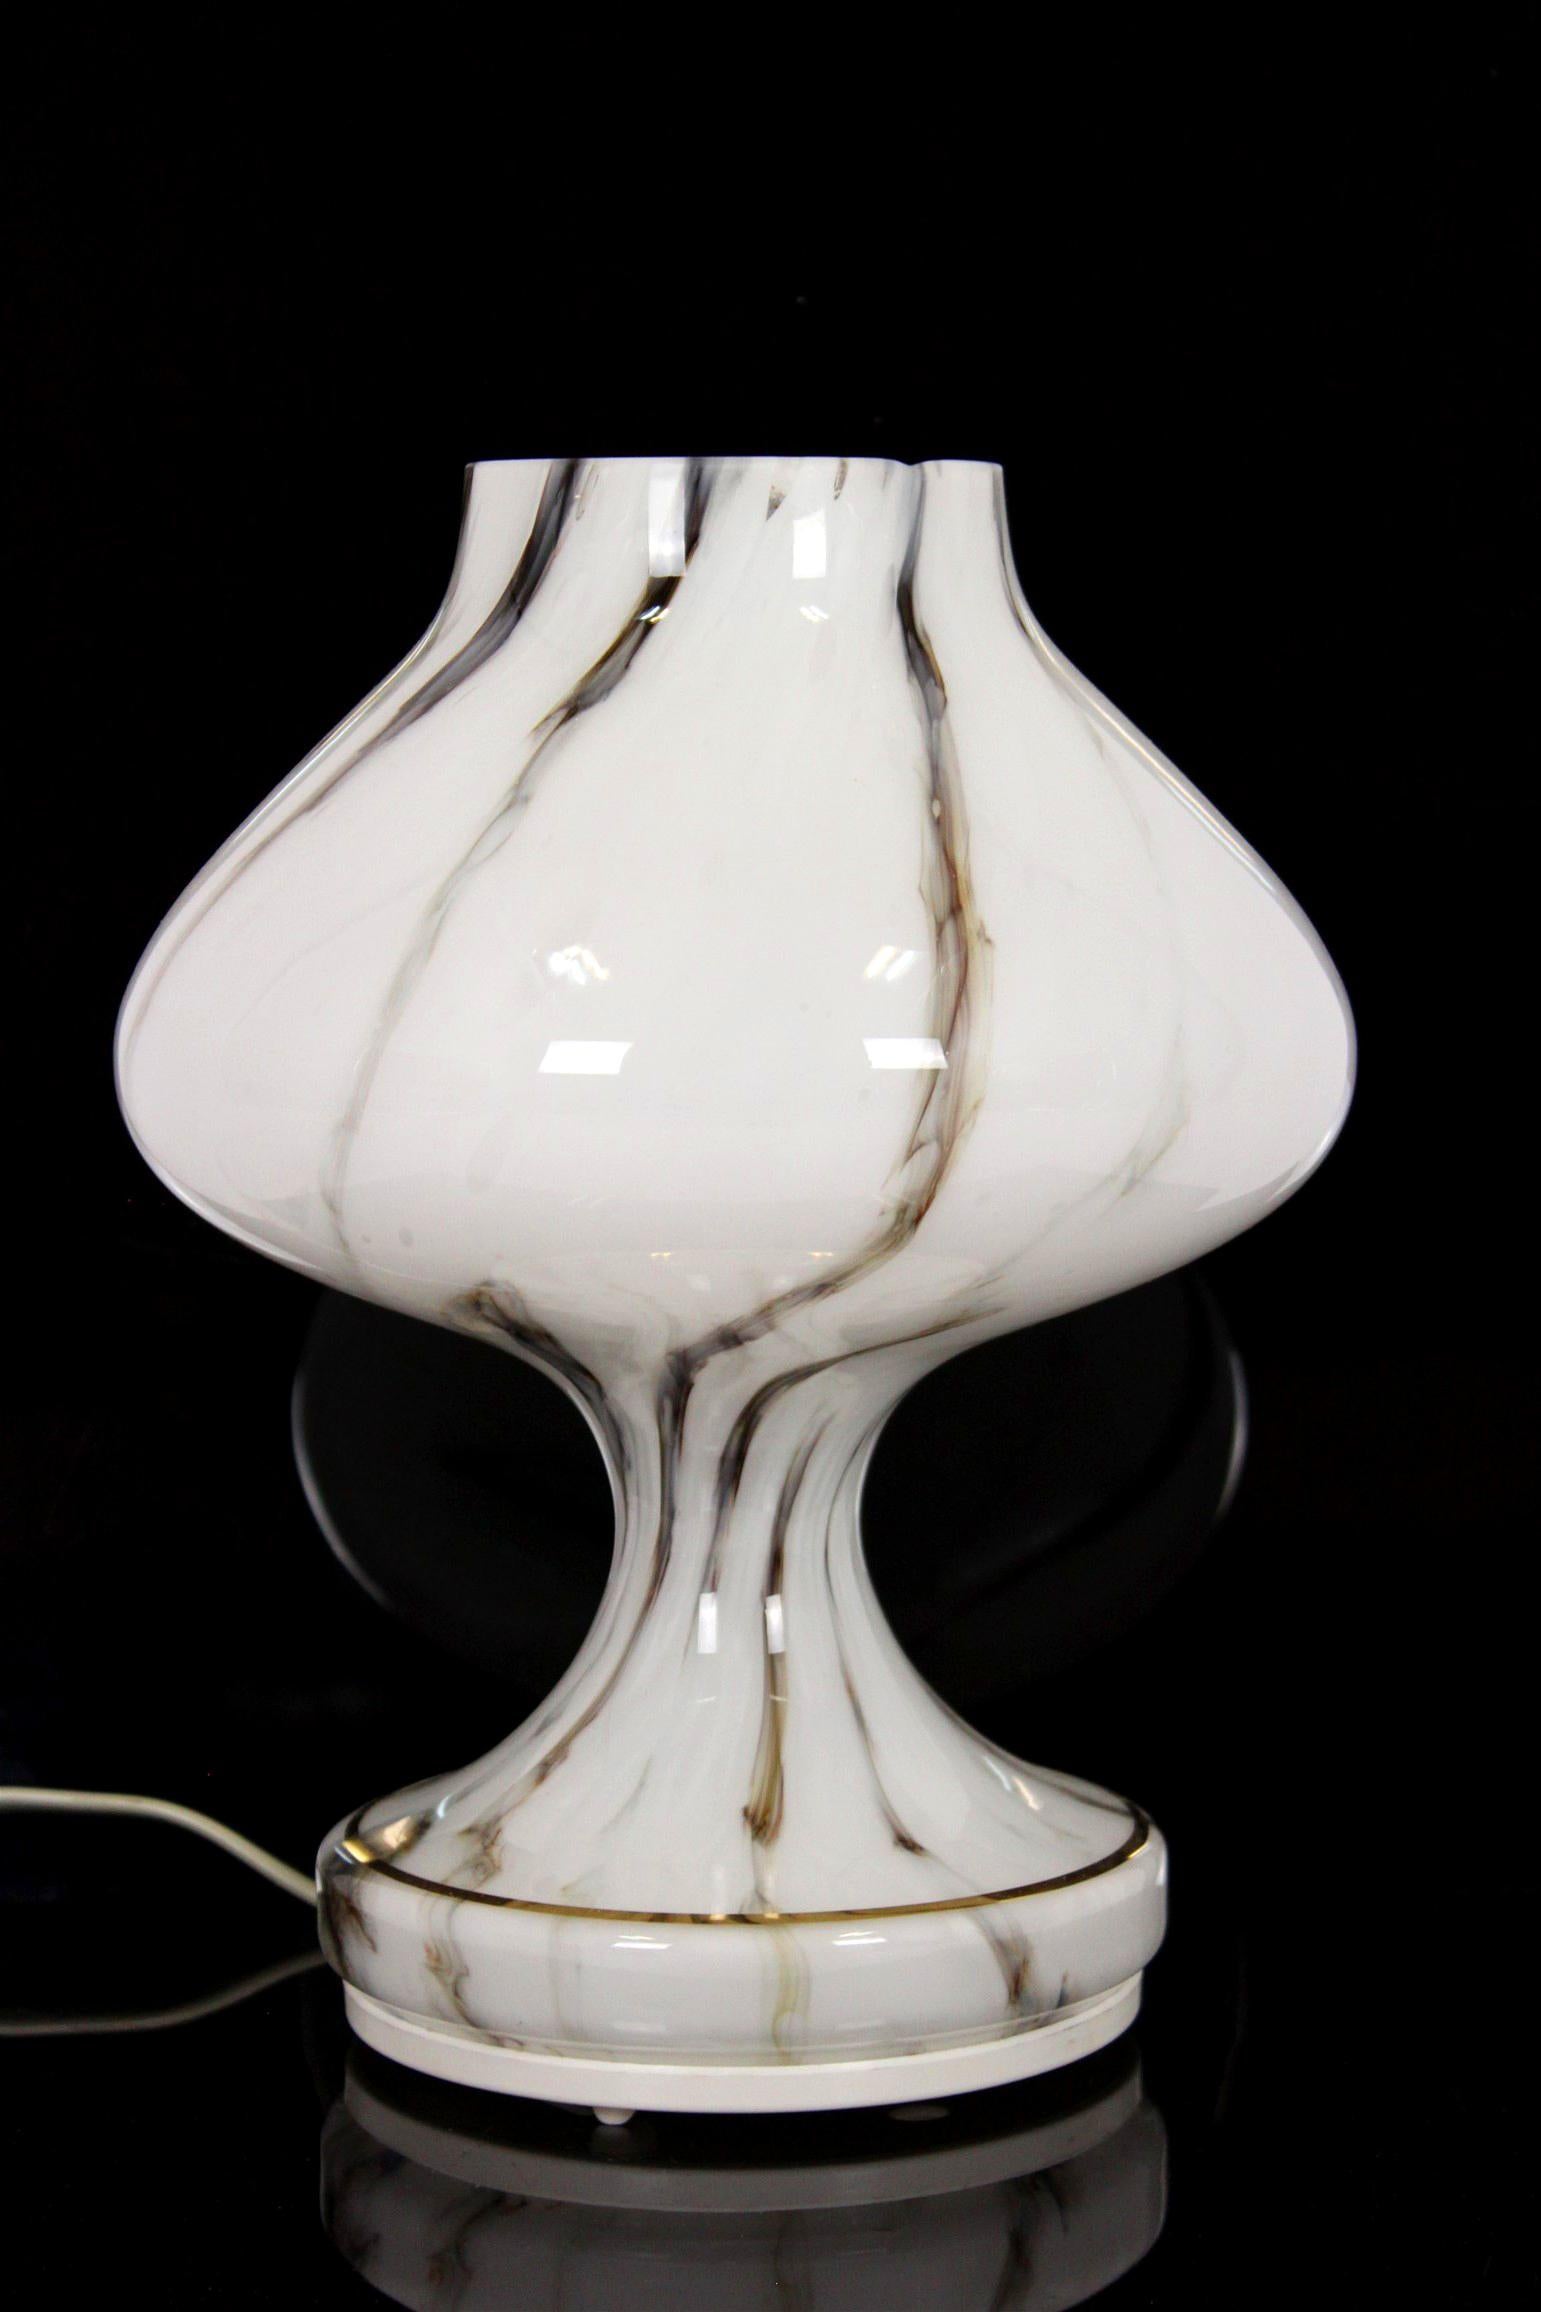 Diese Glastischlampe wurde von Štepán Tabera entworfen und in den 1970er Jahren von OPP Jihlava in der Tschechoslowakei hergestellt. Die Lampe ist in sehr gutem Vintage-Zustand, voll funktionsfähig.